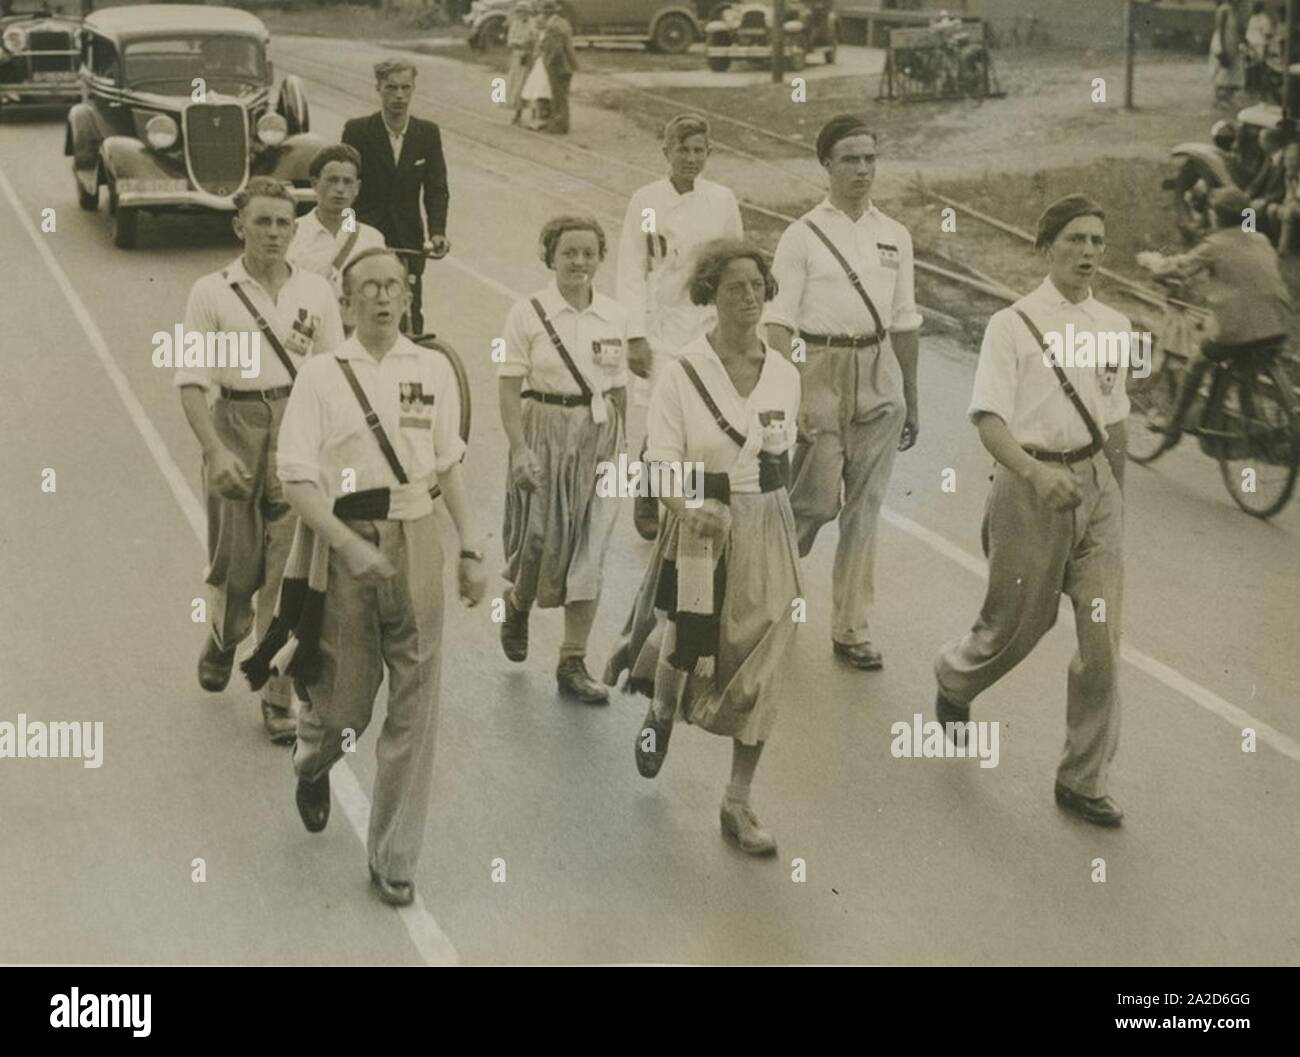 Een groep burgerdeelnemers onderweg op de vierde dag van de 24e vierdaagse. – Stock Photo